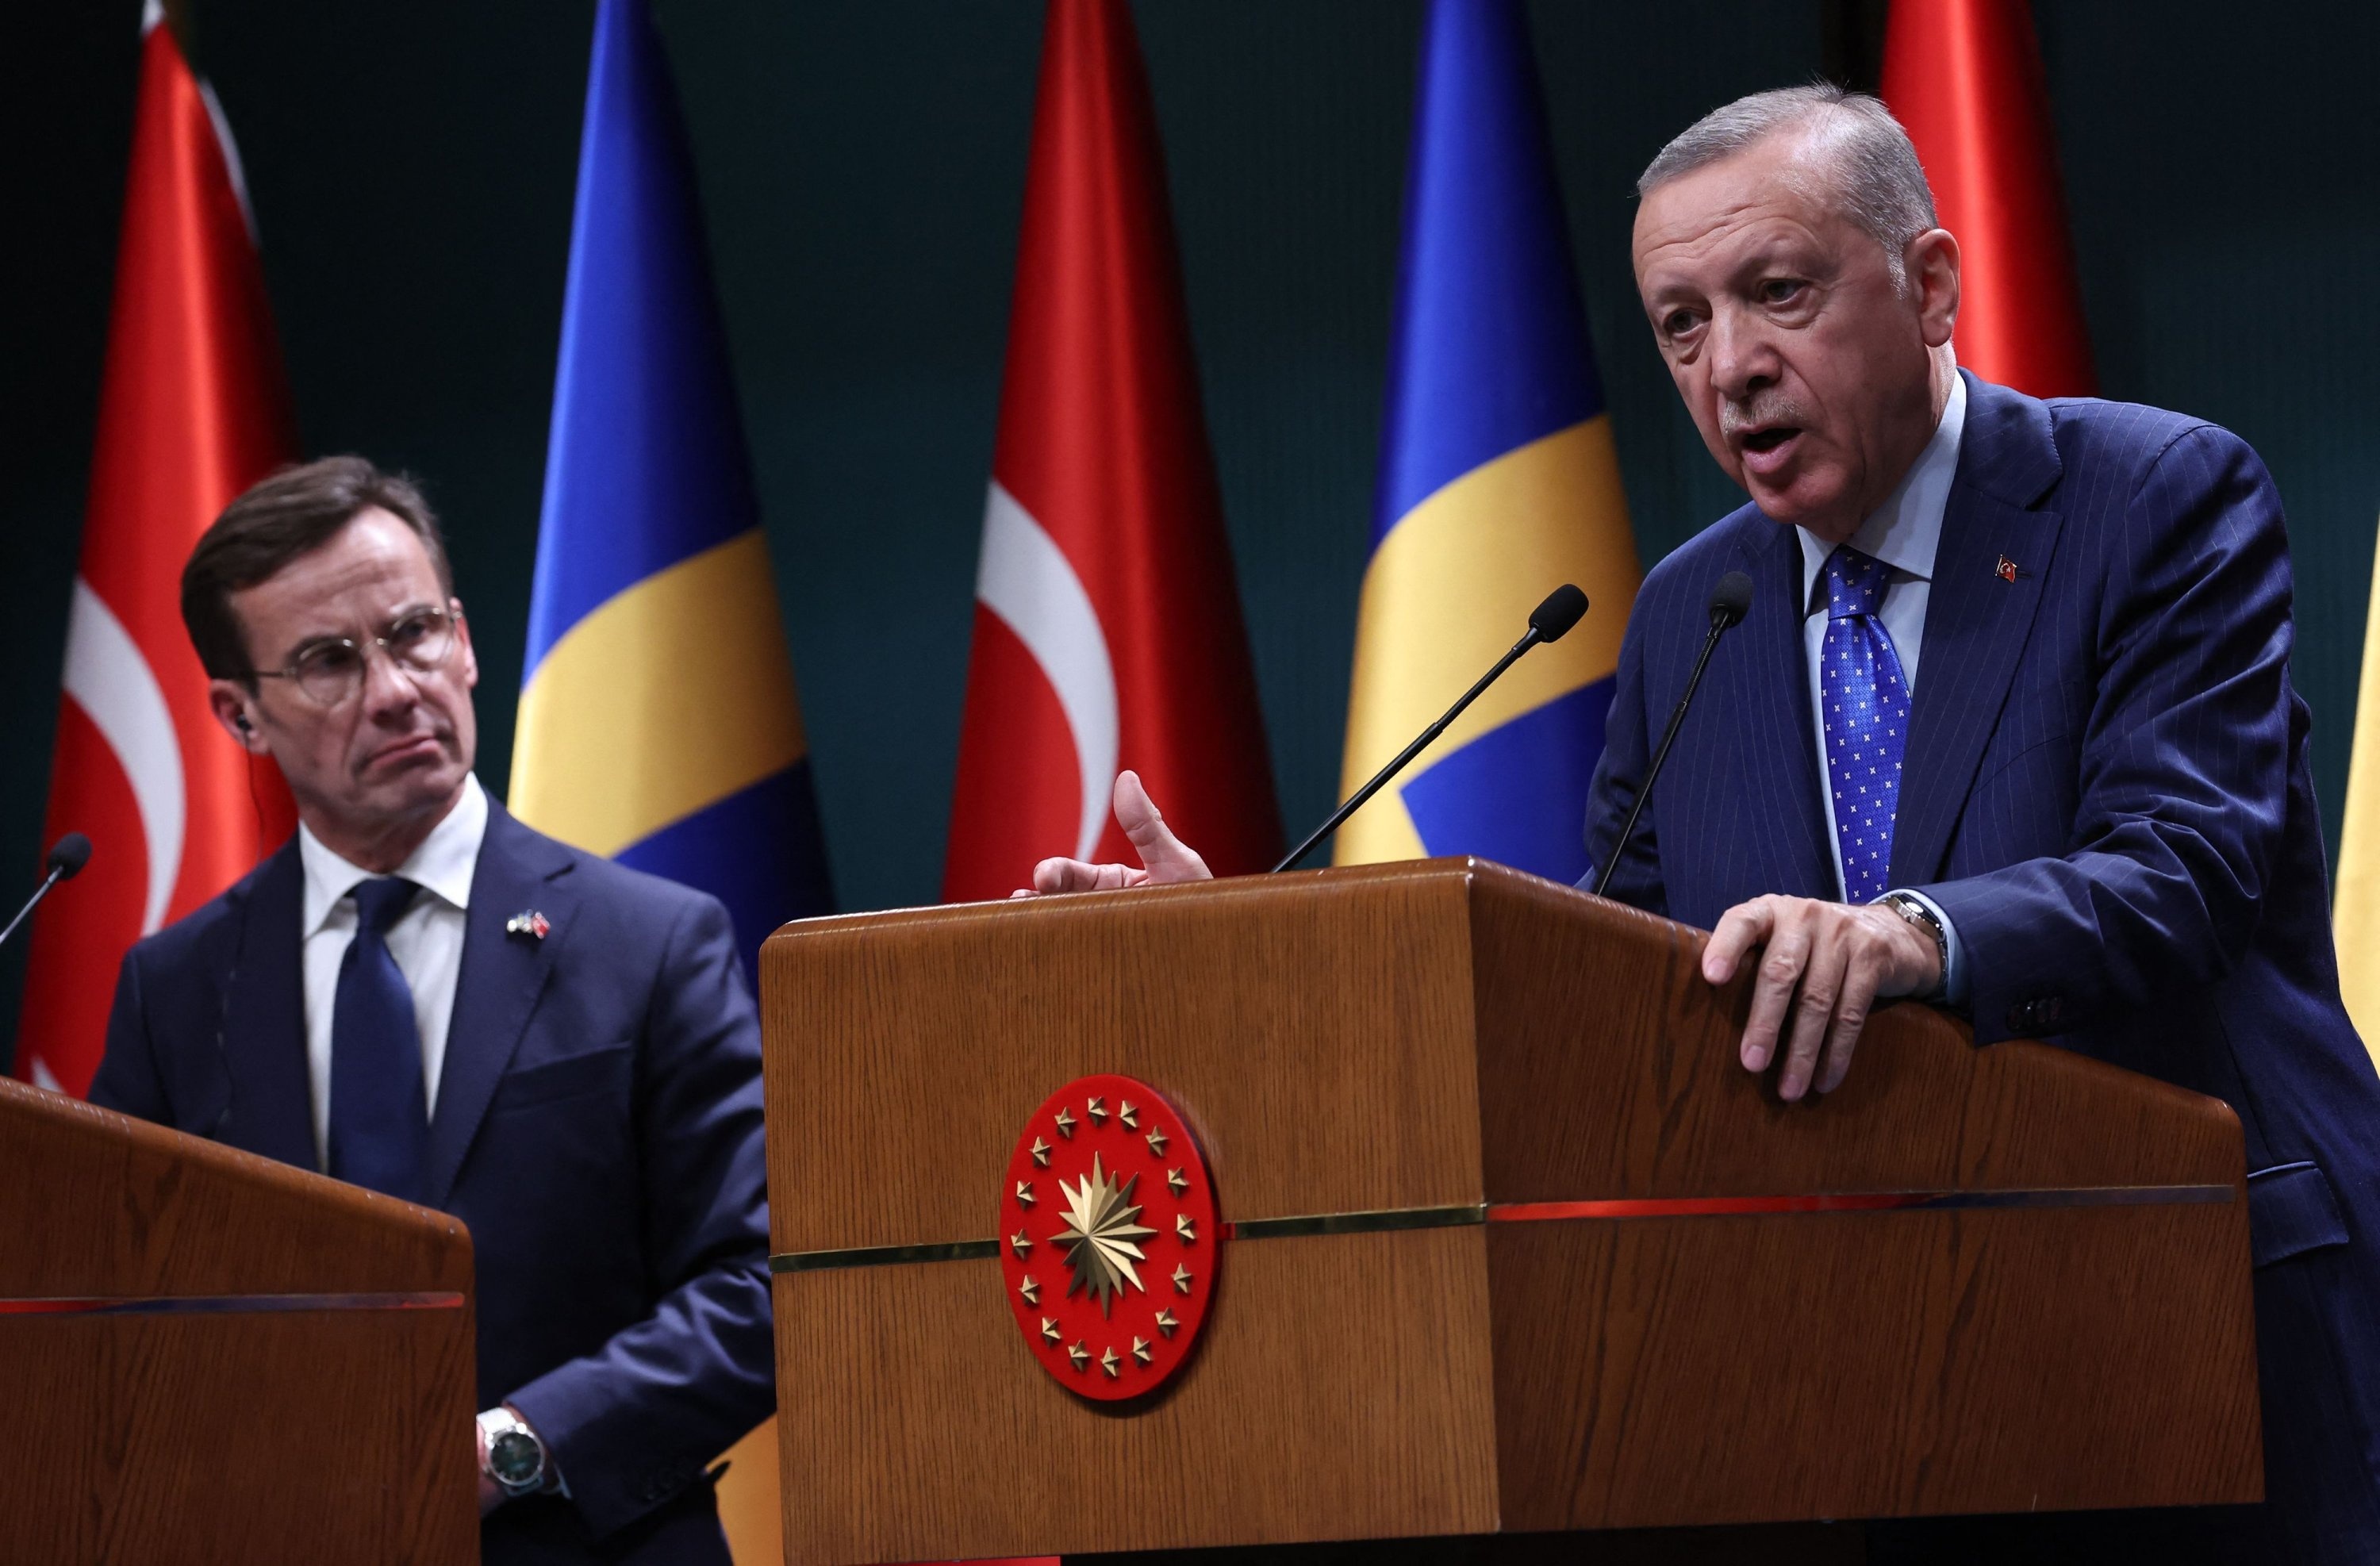 ترکیه از میزان مقابله سوئد با کردها راضی نیست